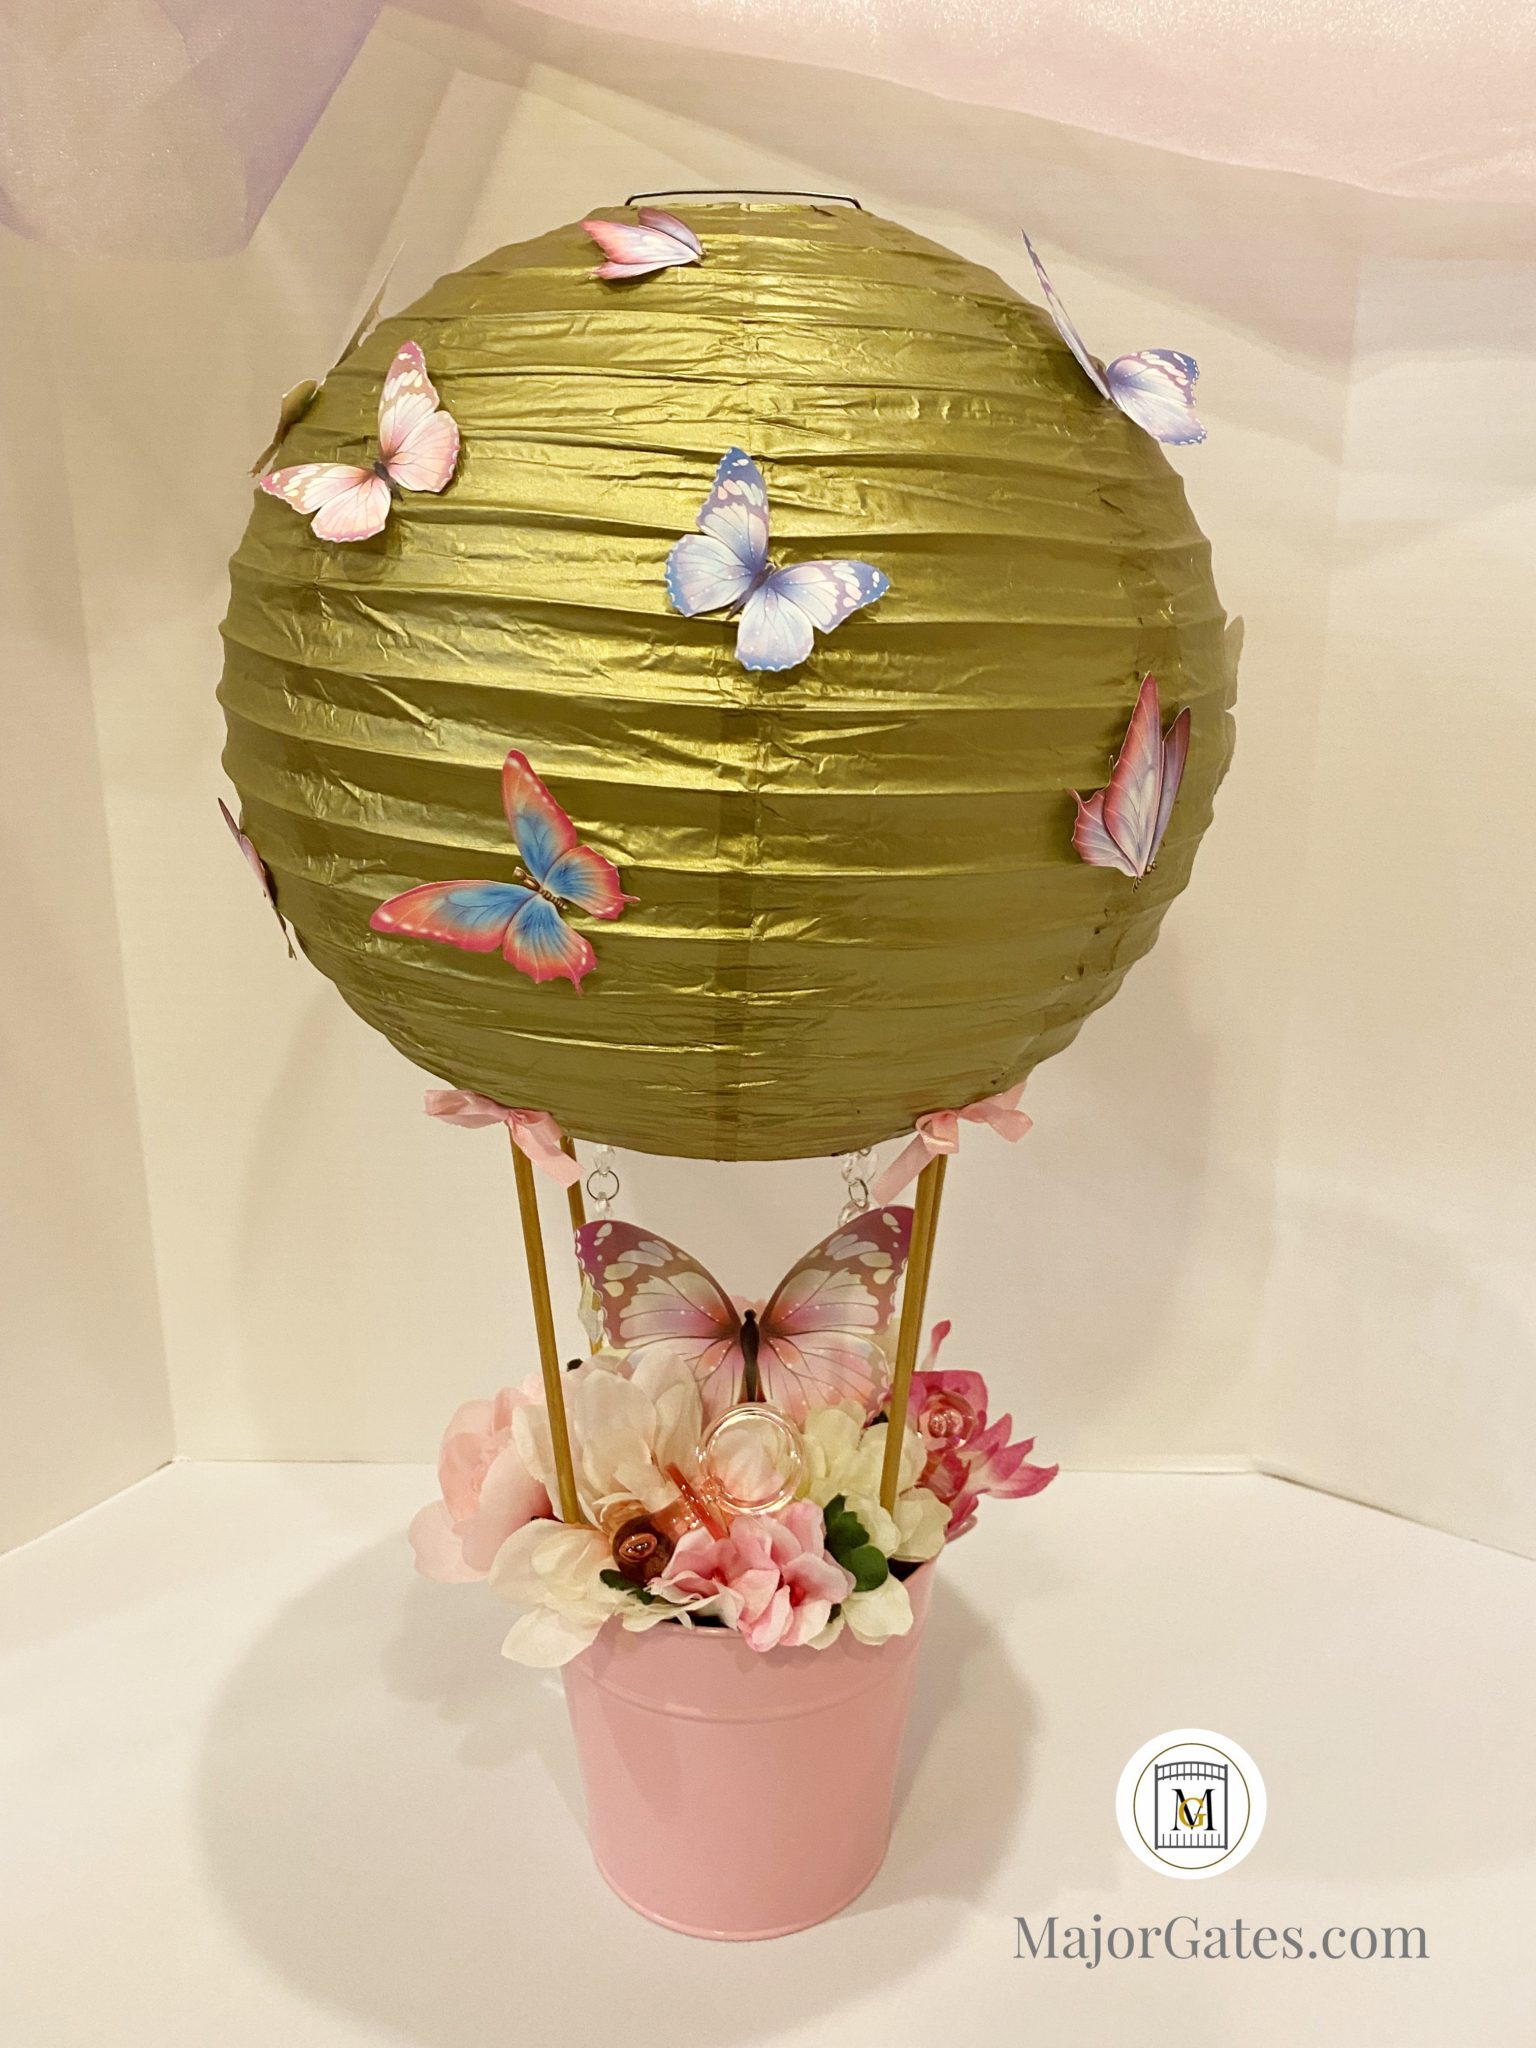 DIY Balloon Bouquet, Hot Air Balloon Chocolate Bouquet, Easy Gift Idea